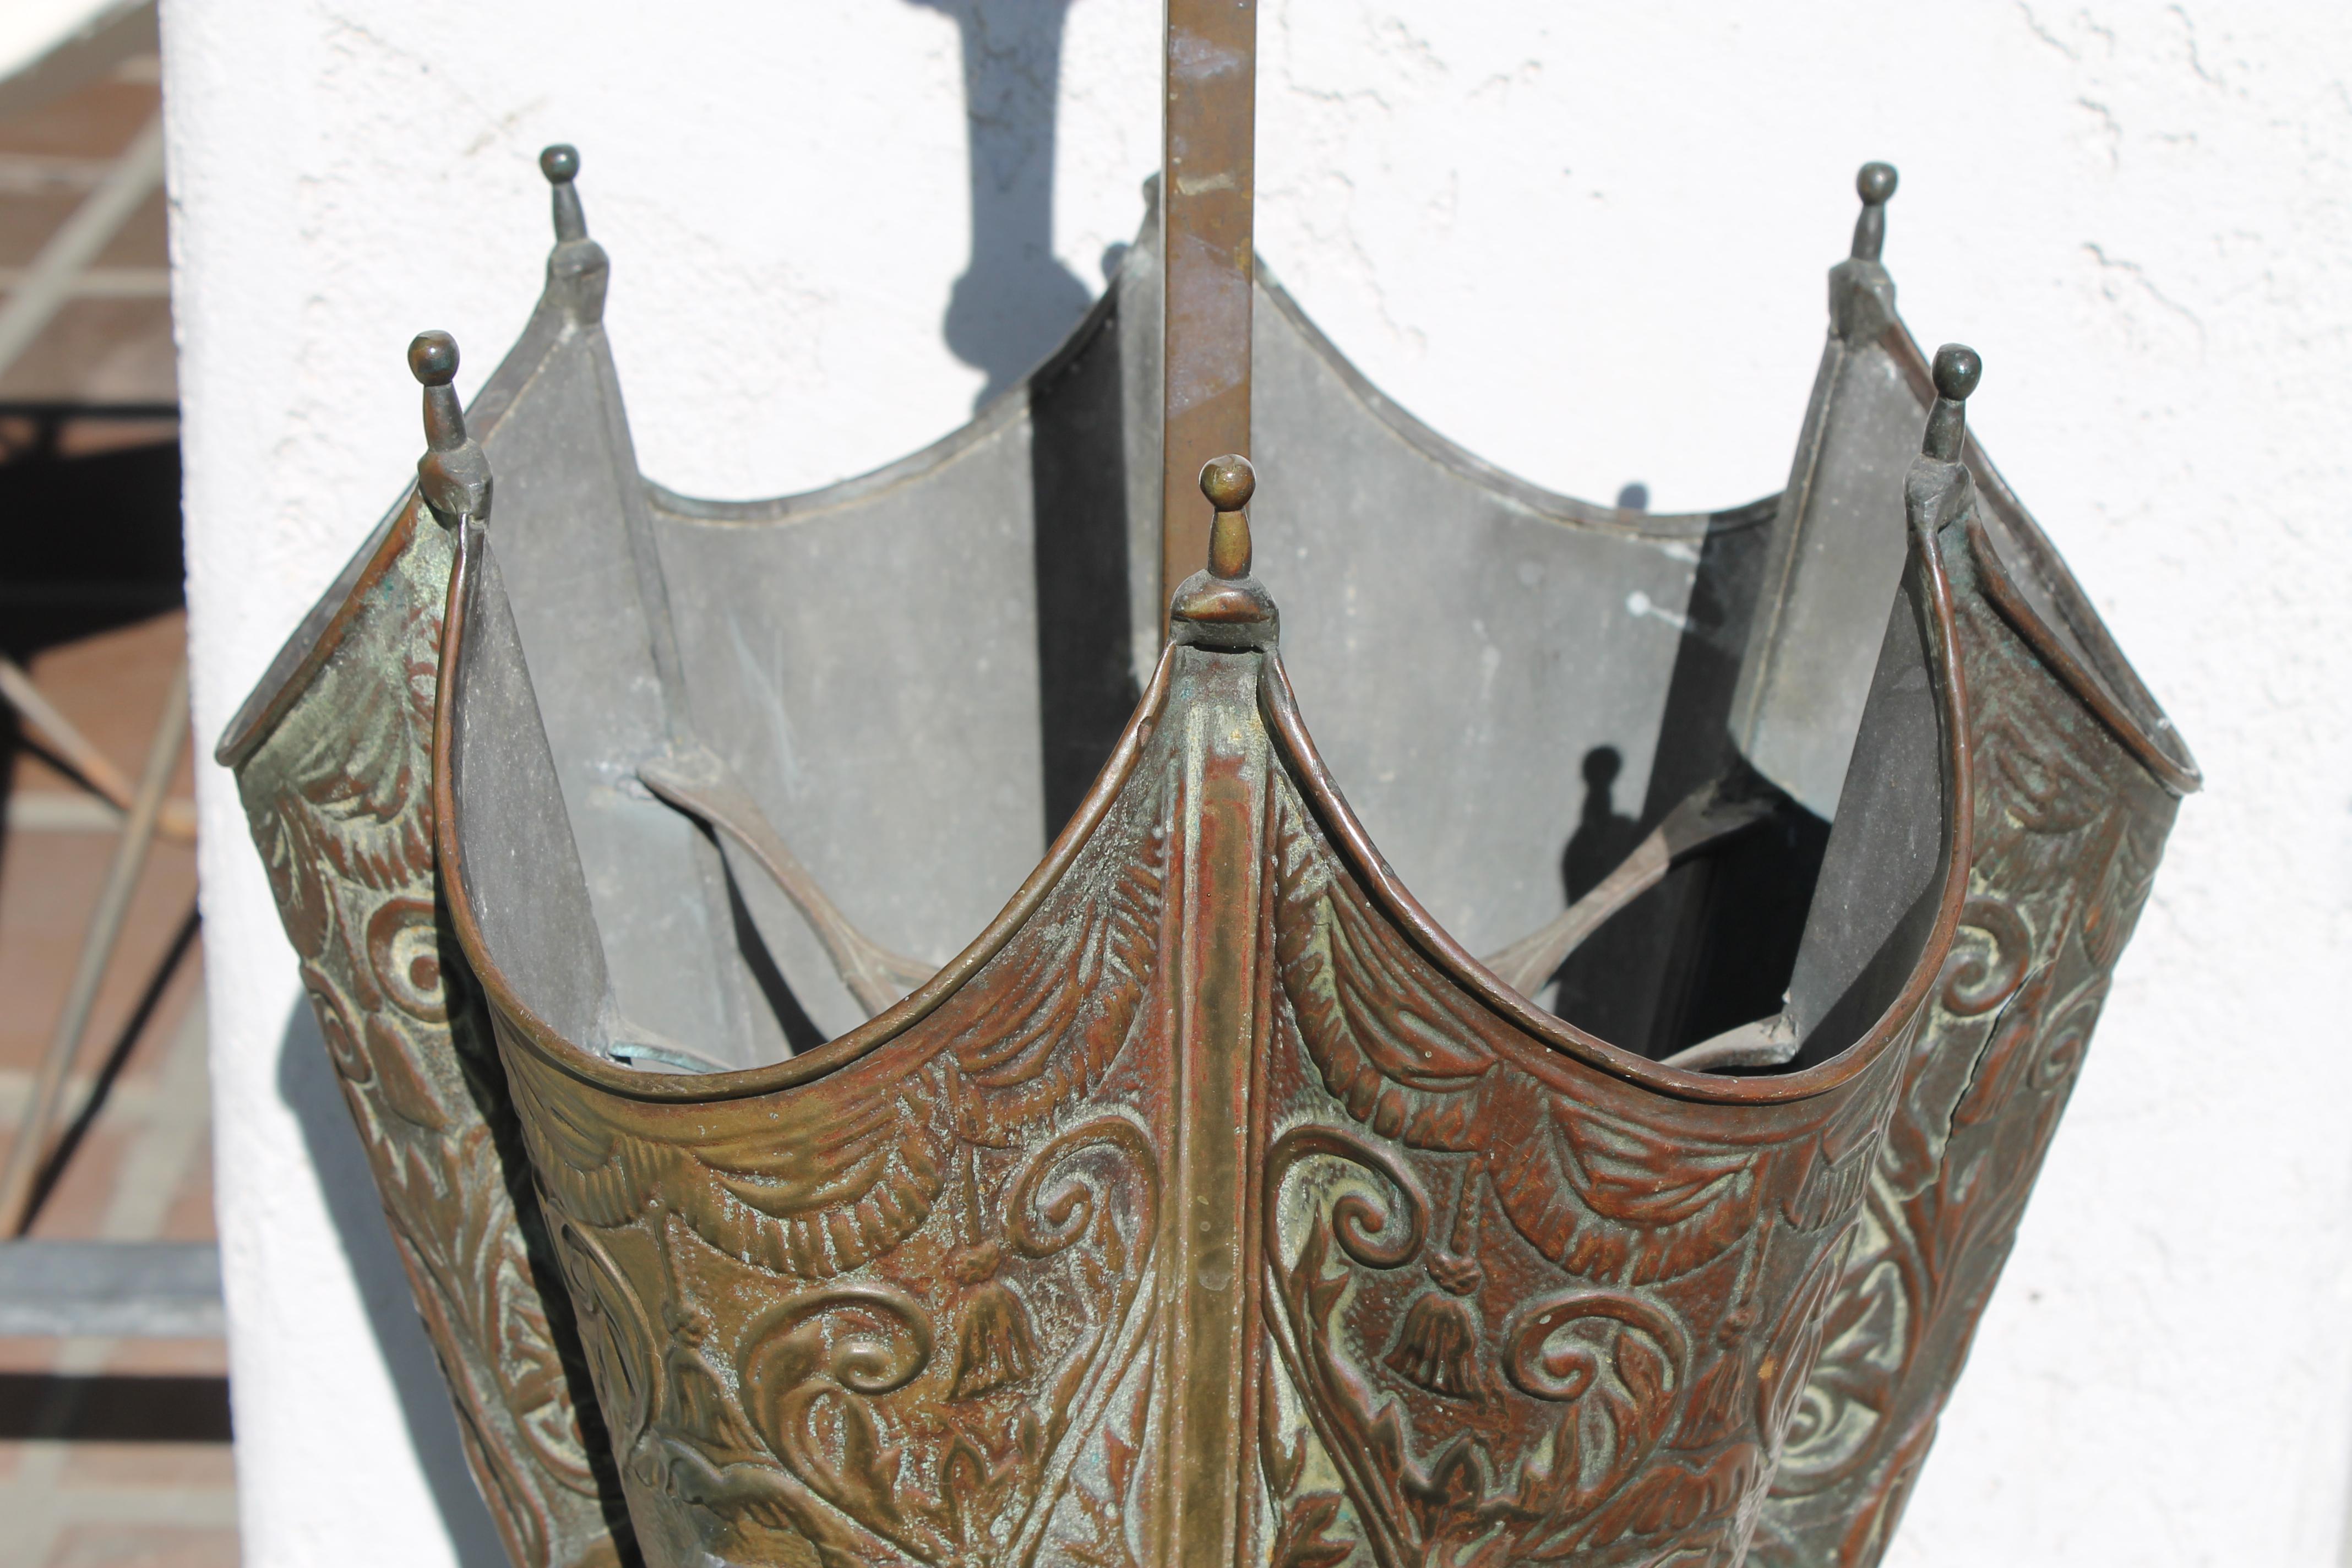 Schirmständer aus Kupfer mit stilisierten Figuren mythologischer Wassergötter. Der Schirmständer hat einen Durchmesser von 13